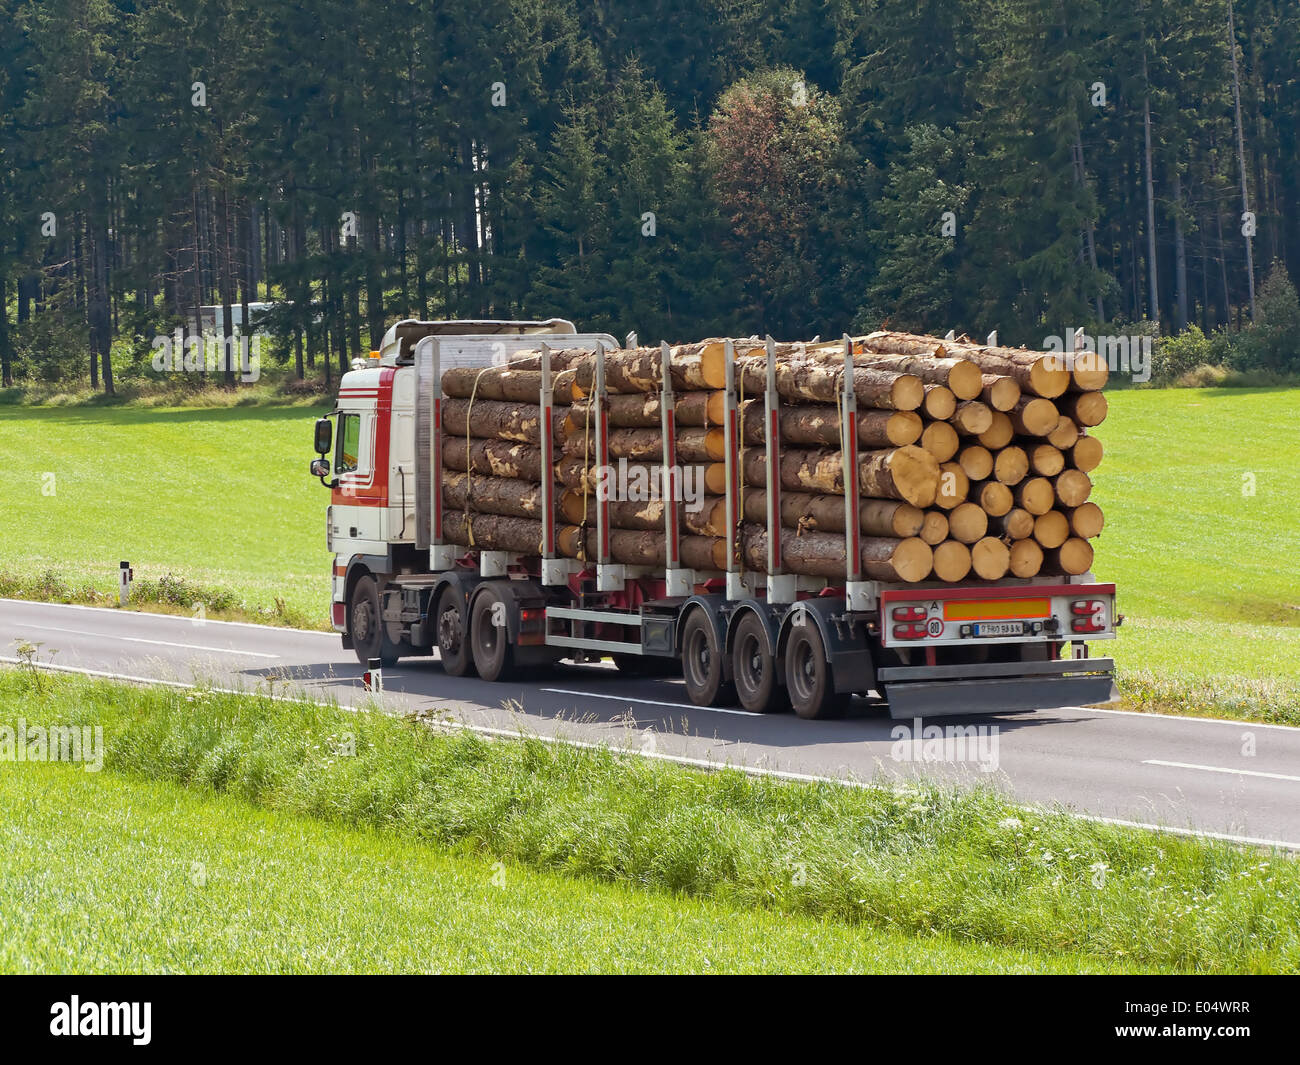 Transport of of wooden drink in a truck on the street, Transport von Holzstaemmen auf einem Lastwagen auf der Strasse Stock Photo